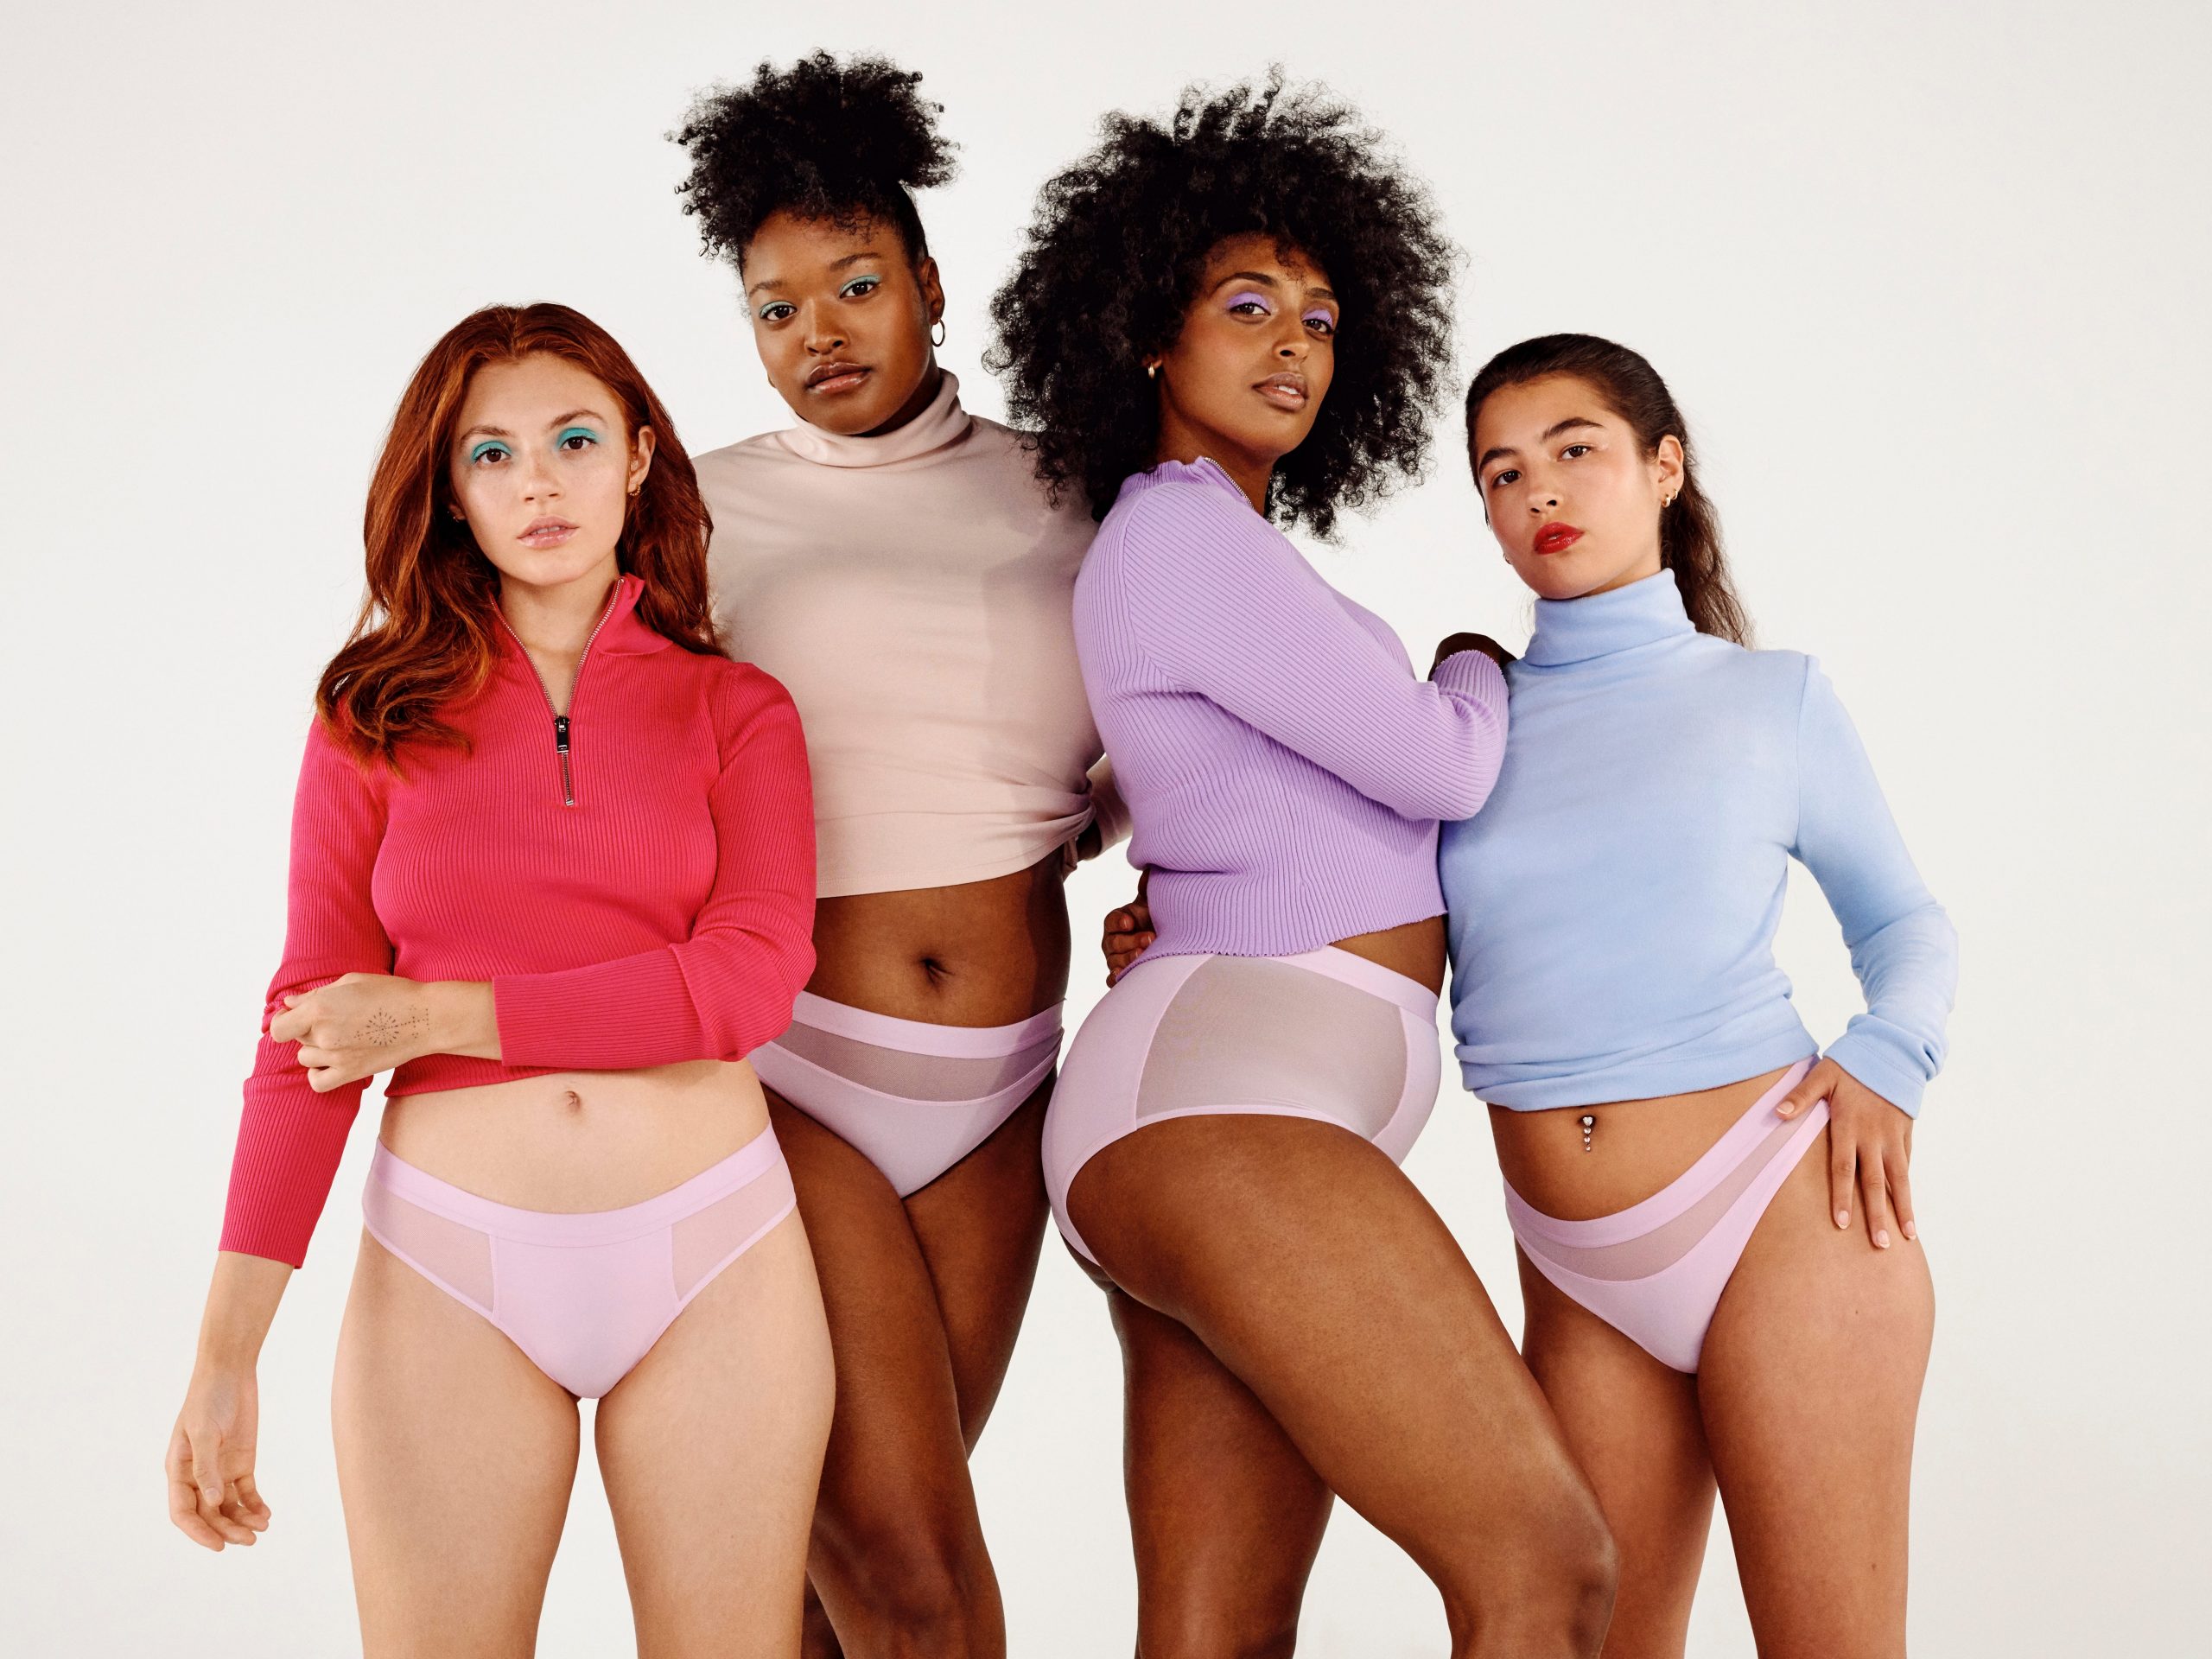 Parade underwear brand startup models